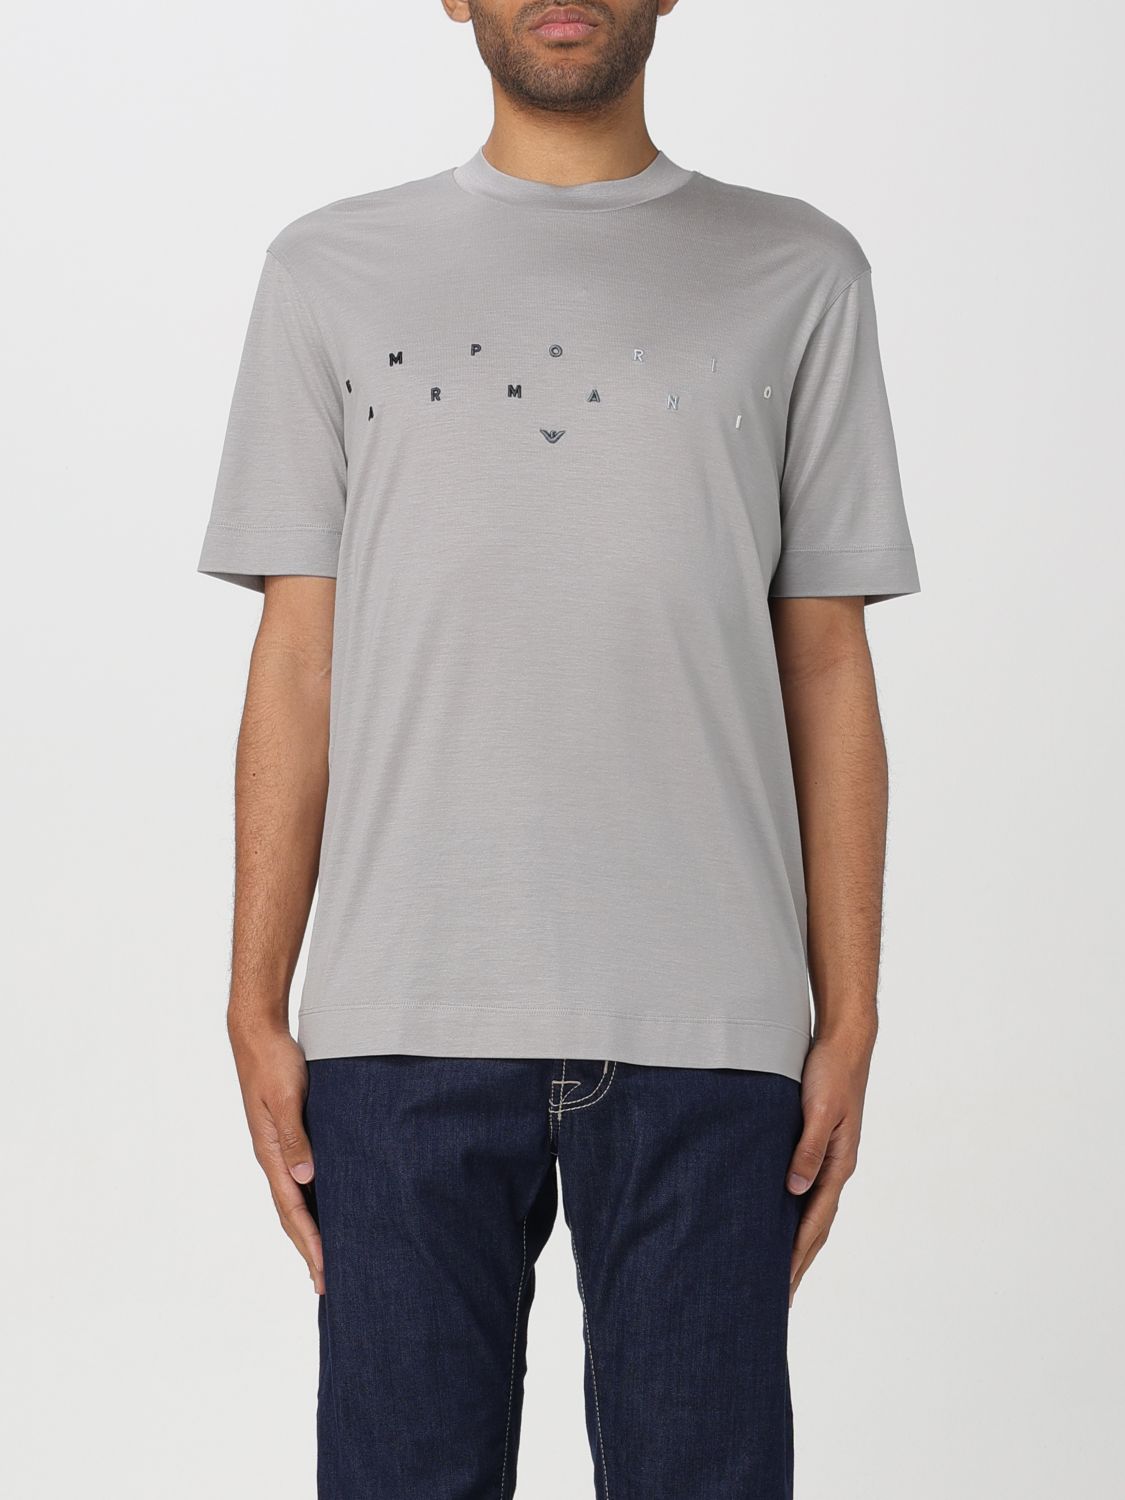 Emporio Armani T-Shirt EMPORIO ARMANI Men color Grey